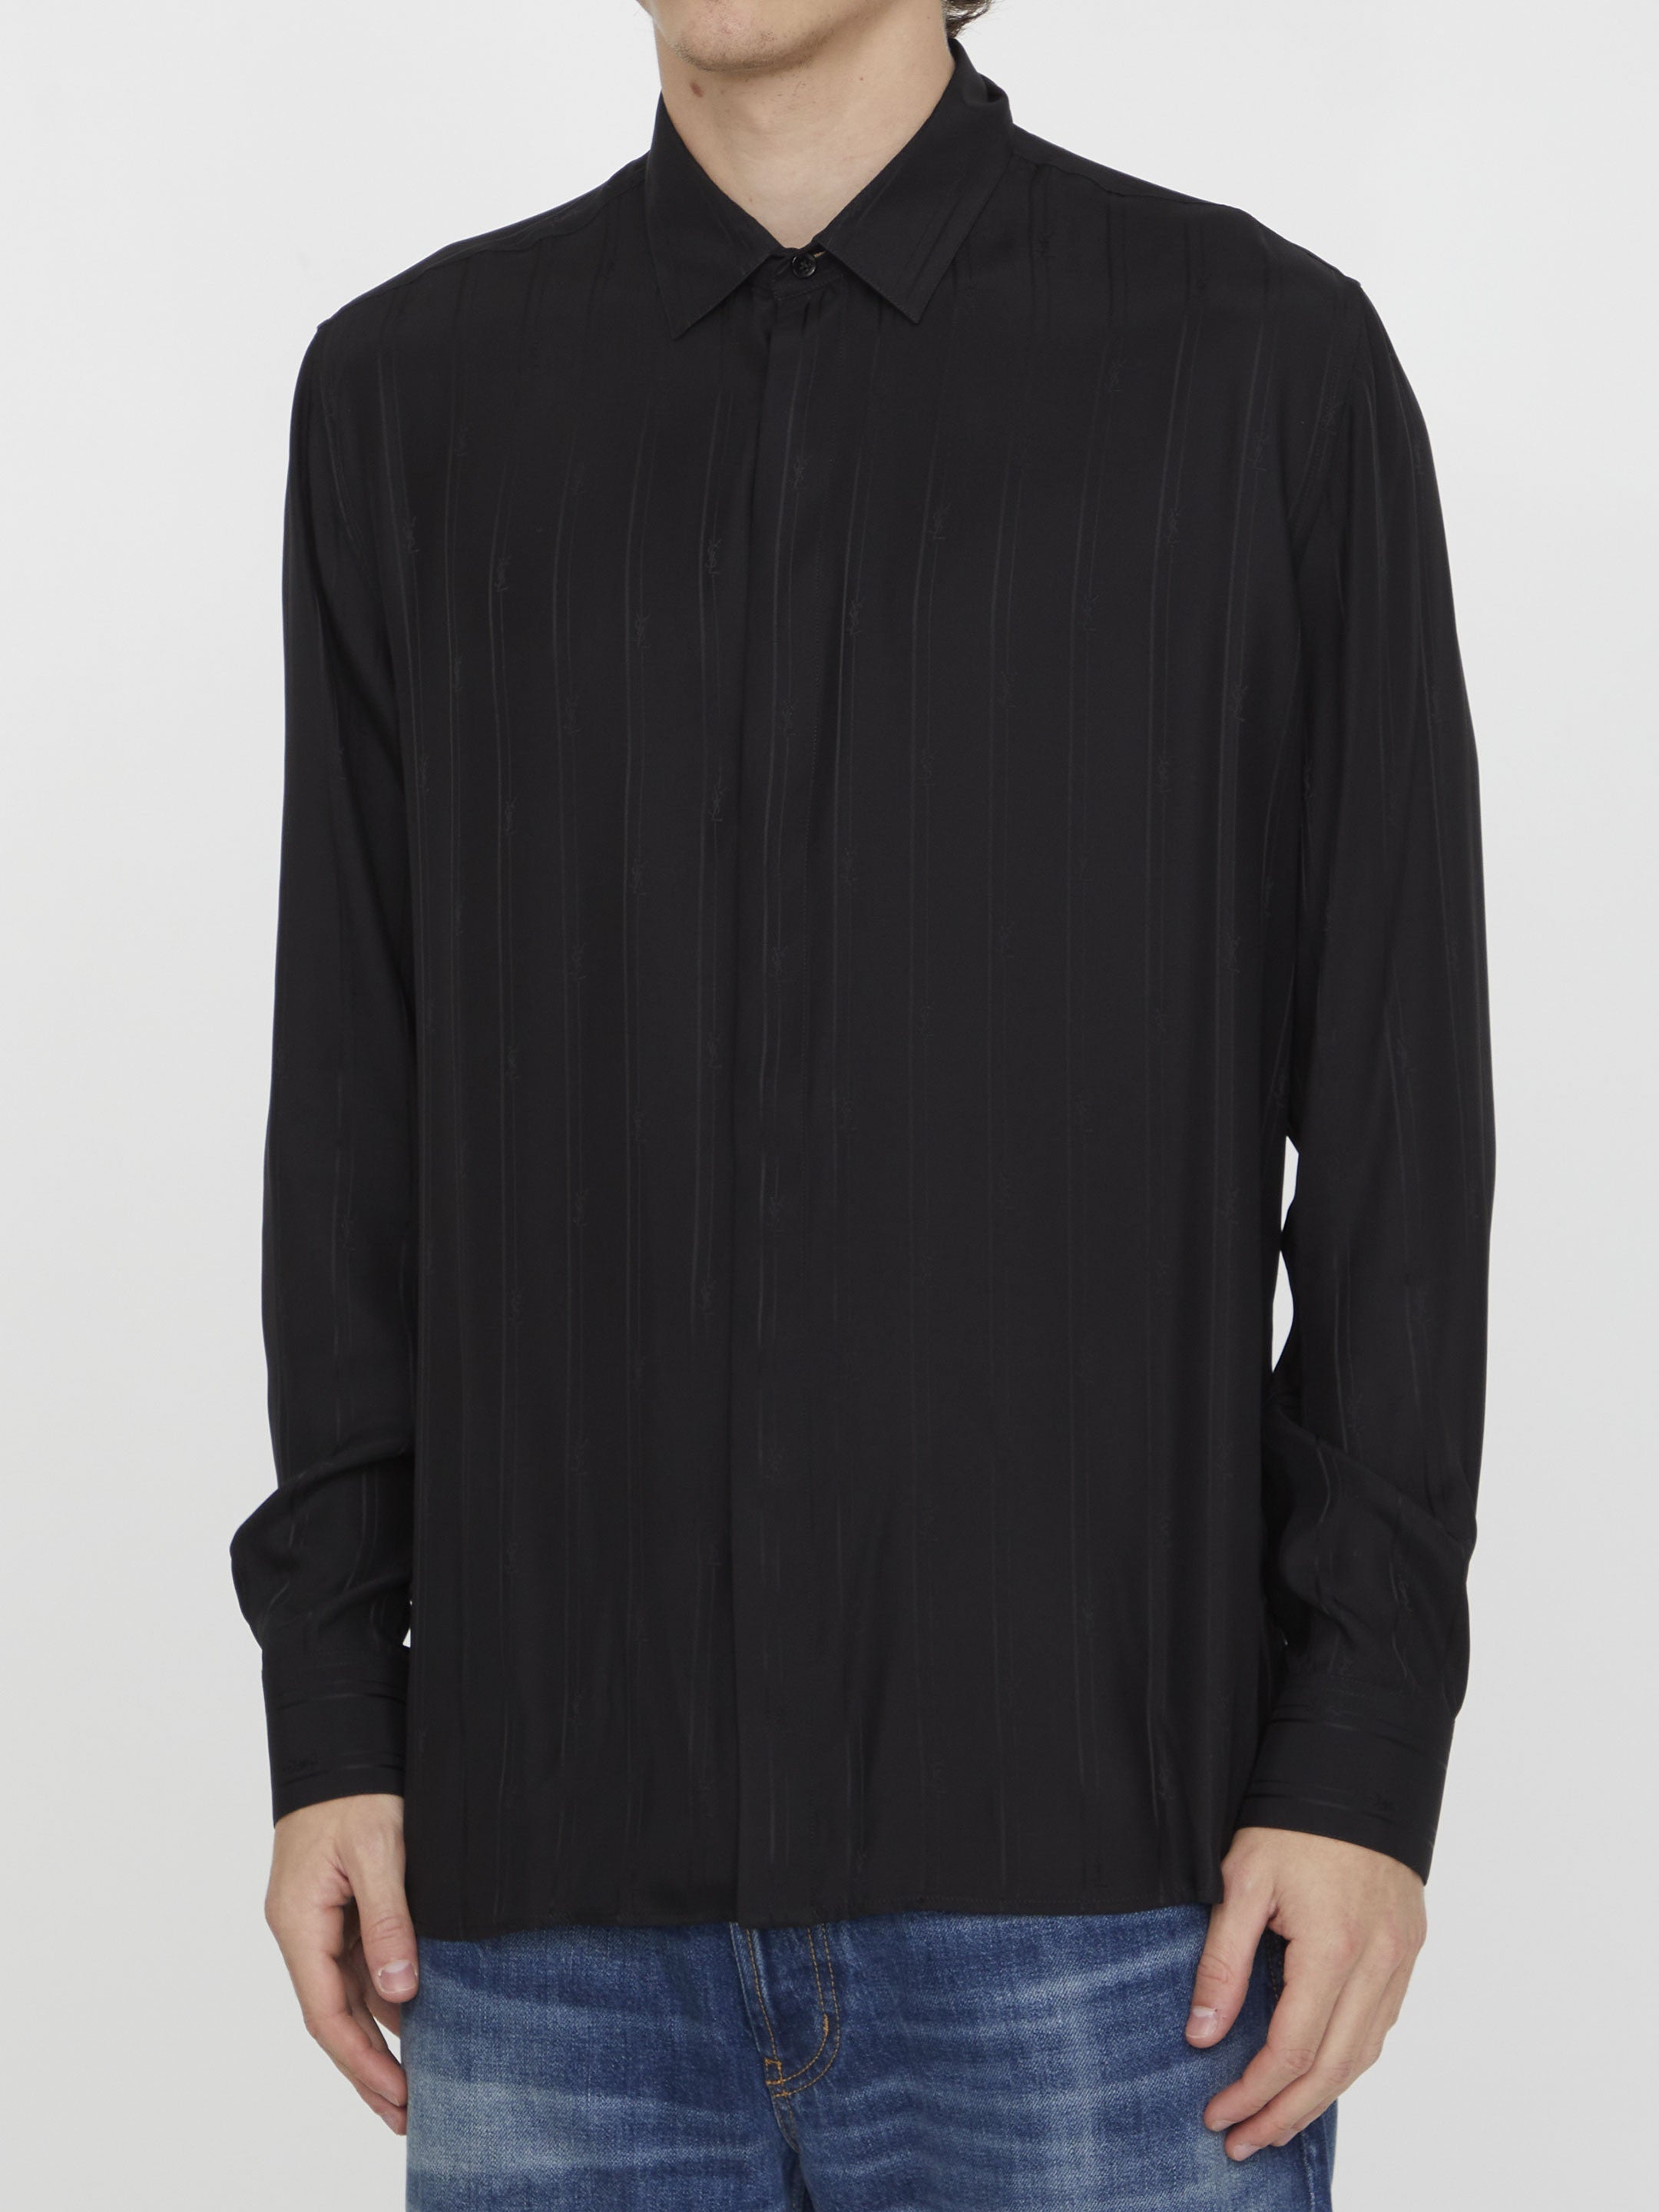 SAINT-LAURENT-OUTLET-SALE-Cassandre-striped-shirt-Shirts-41-BLACK-ARCHIVE-COLLECTION-2.jpg